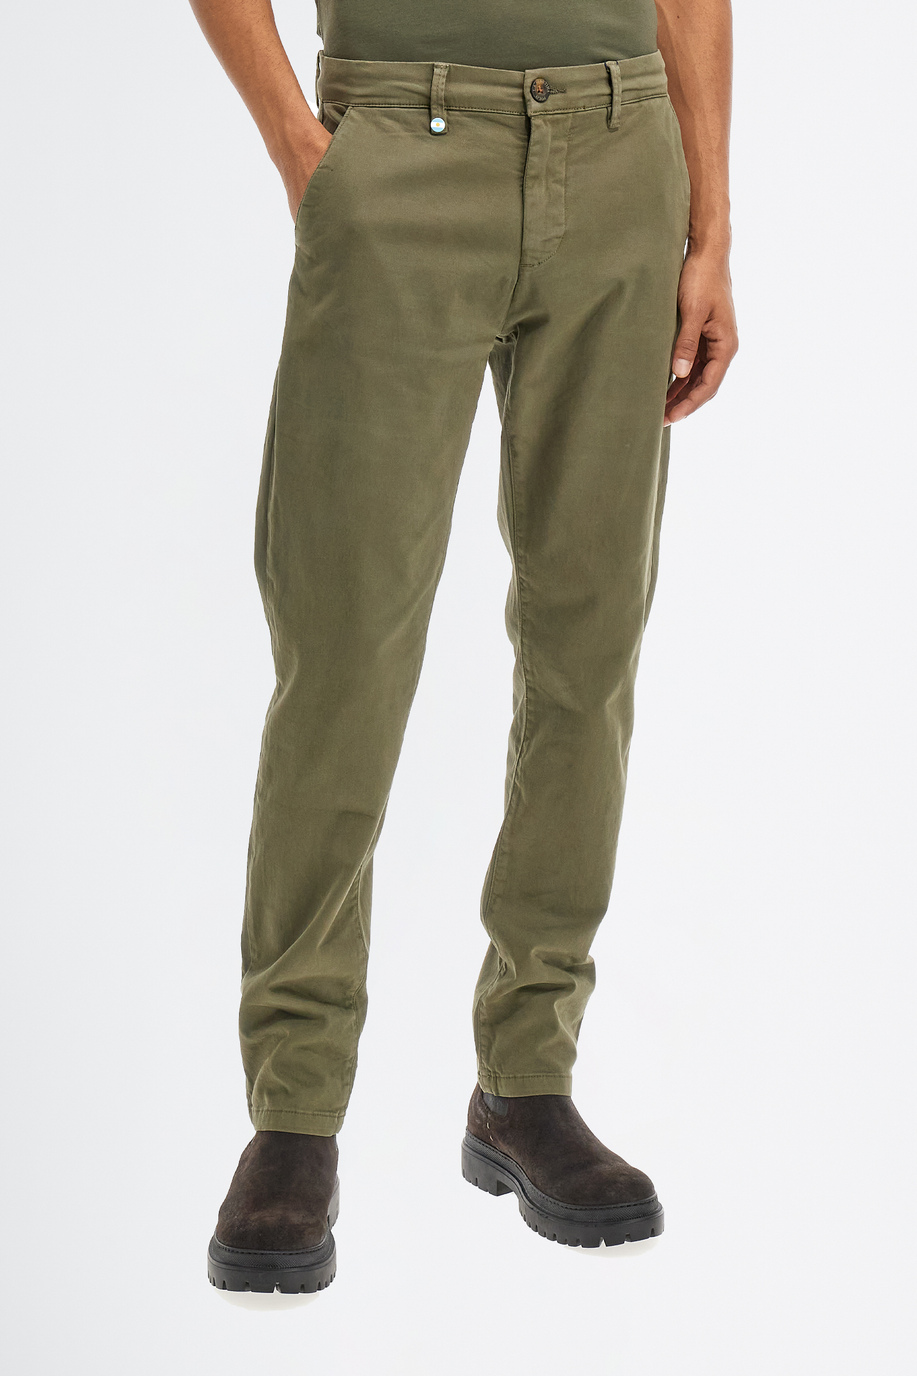 Pantalone da uomo in cotone twill stretch modello chino slim fit - Pantaloni | La Martina - Official Online Shop